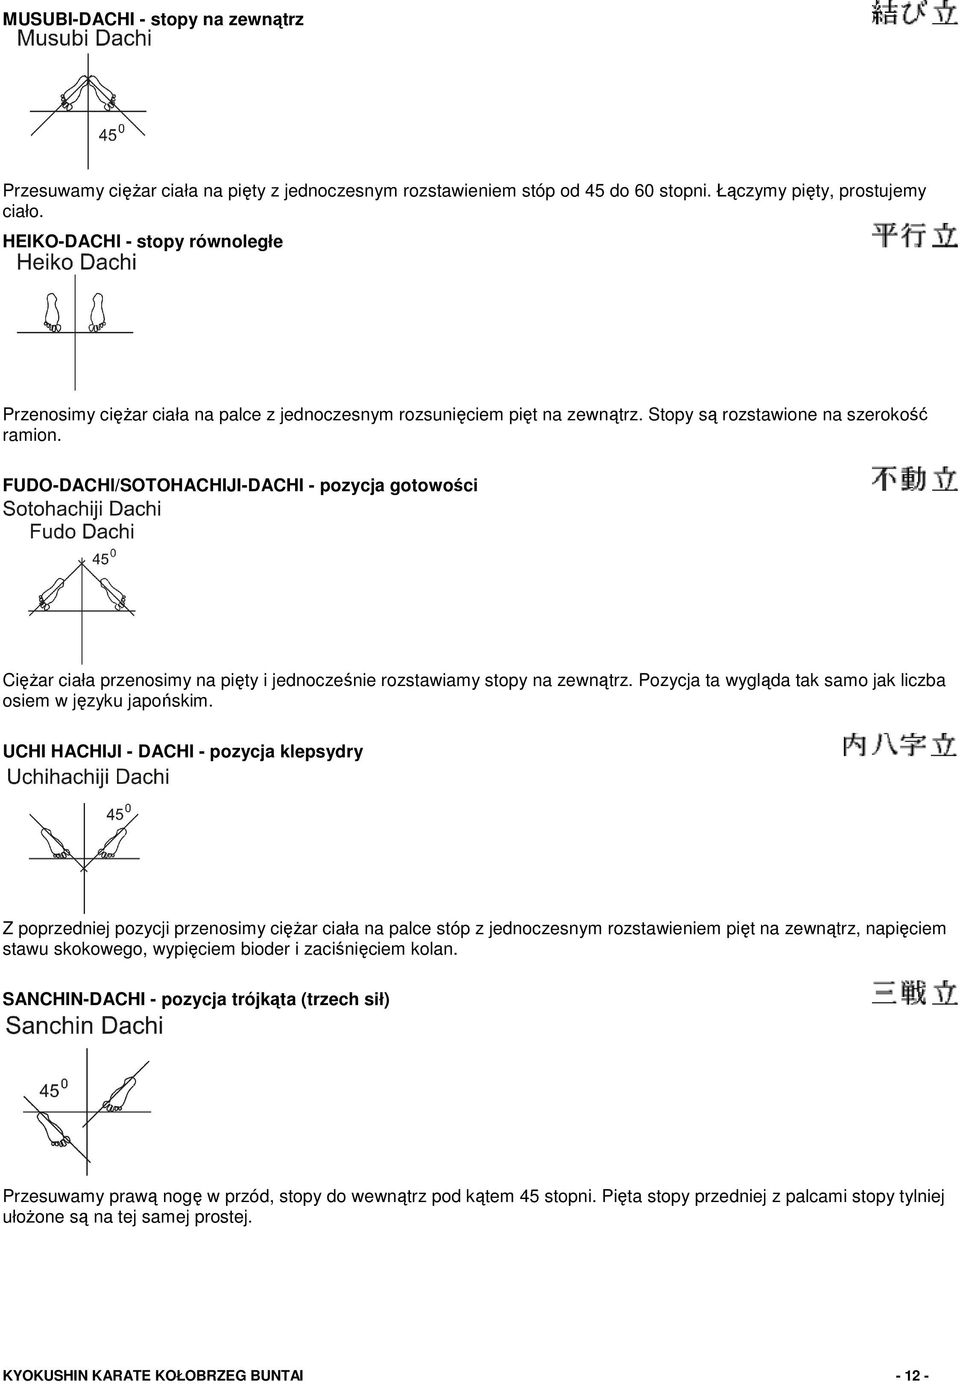 FUDO-DACHl/SOTOHACHIJI-DACHI - pozycja gotowości Ciężar ciała przenosimy na pięty i jednocześnie rozstawiamy stopy na zewnątrz. Pozycja ta wygląda tak samo jak liczba osiem w języku japońskim.